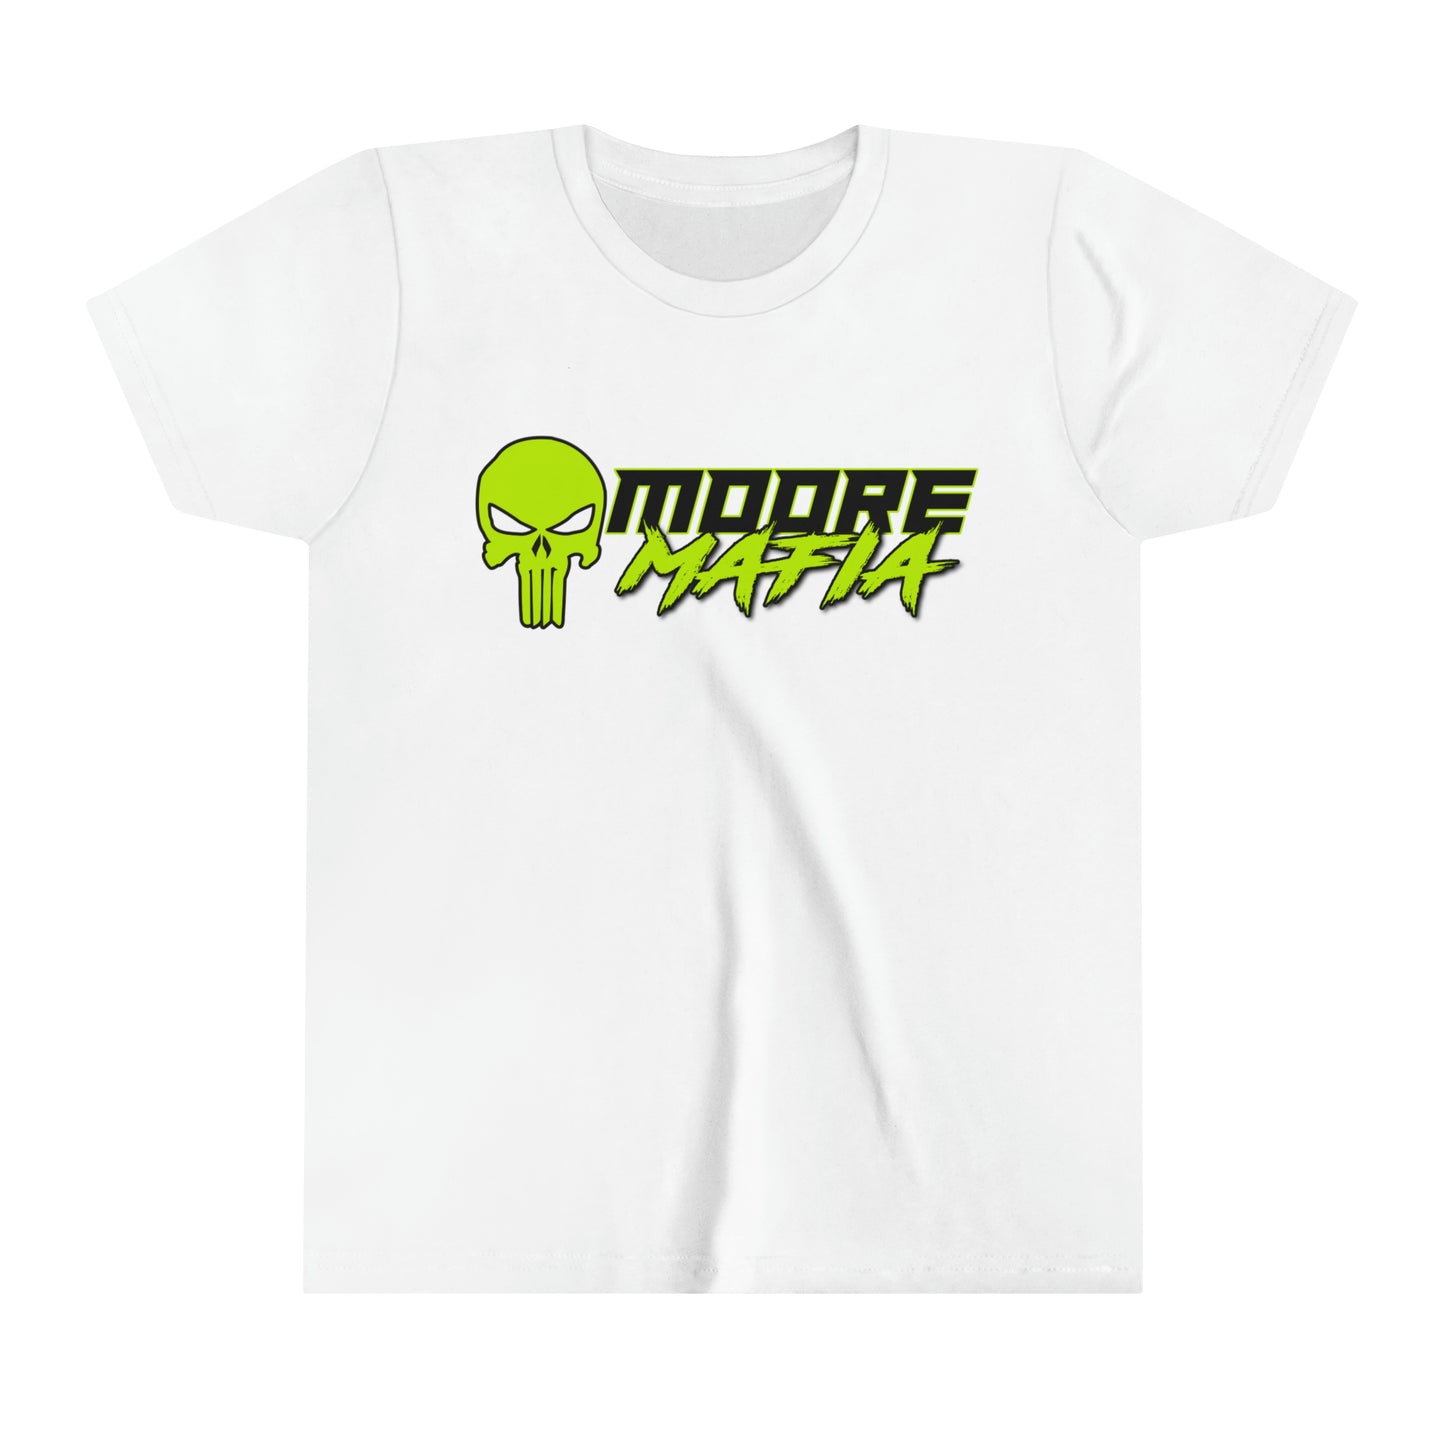 Moore Mafia Youth Short Sleeve T-Shirt